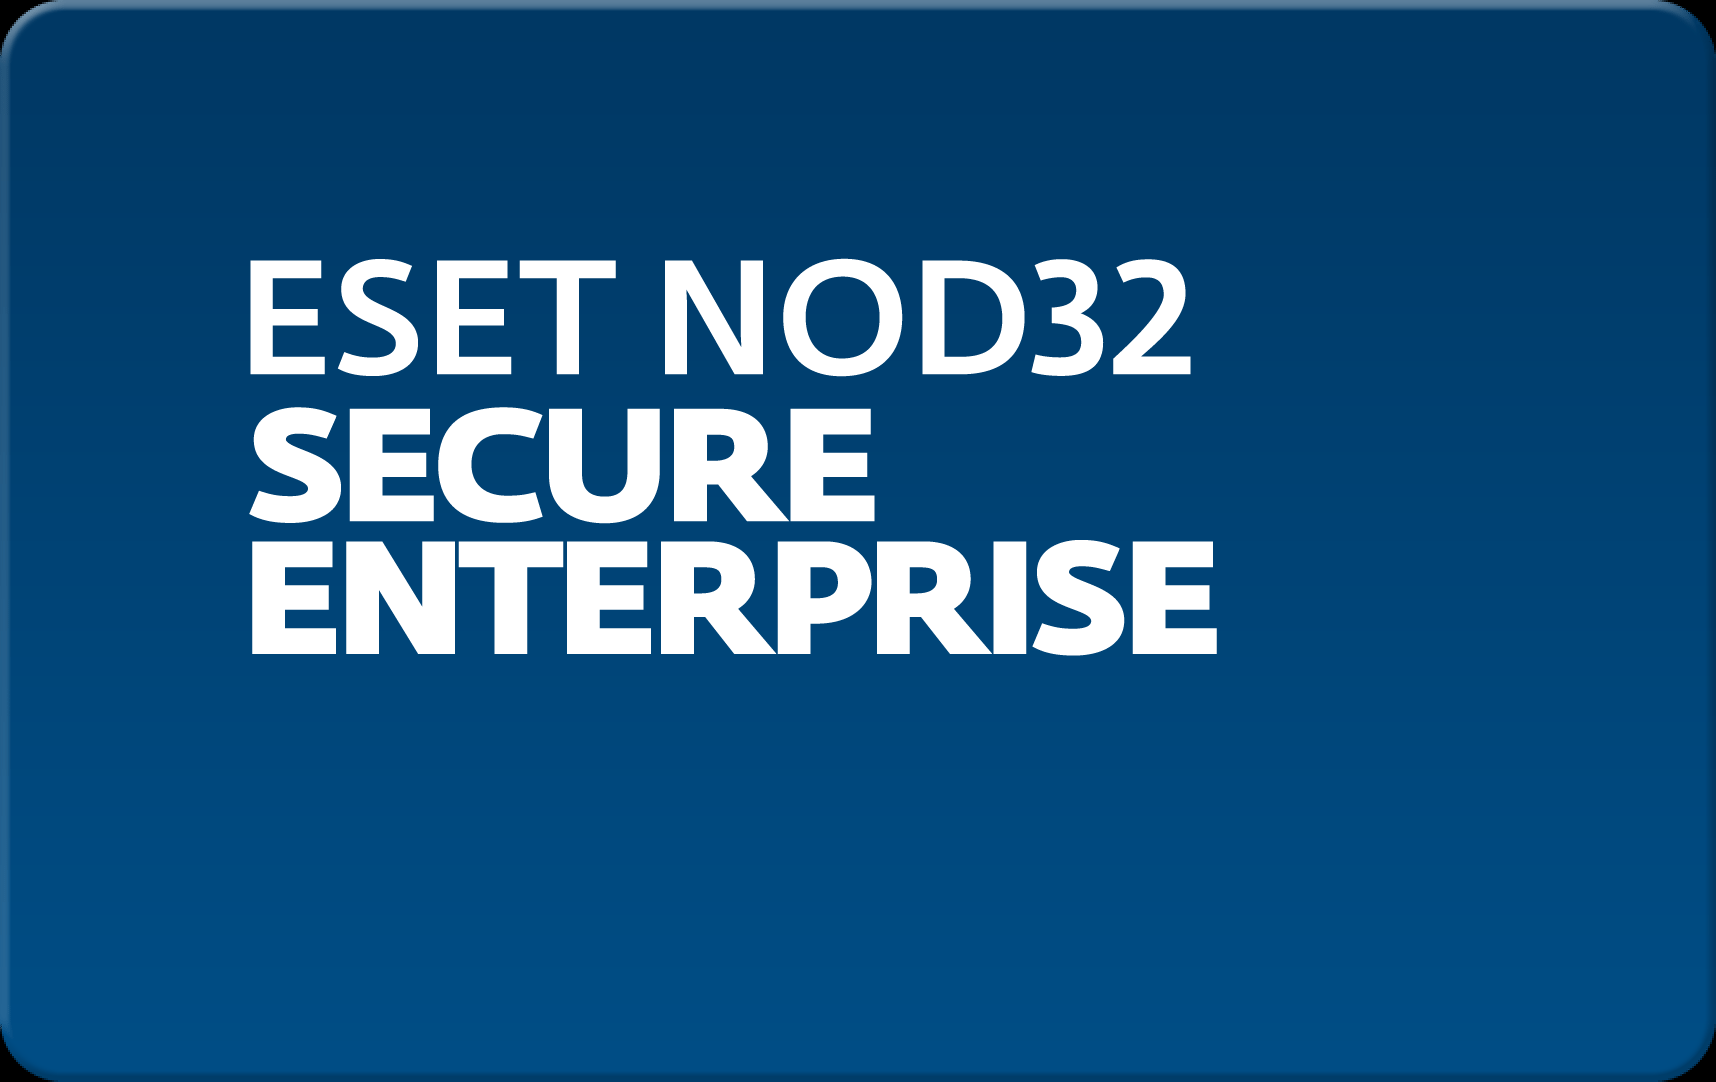        Eset NOD32 Secure Enterprise  173  NOD32-ESE-NS-1-173  #1